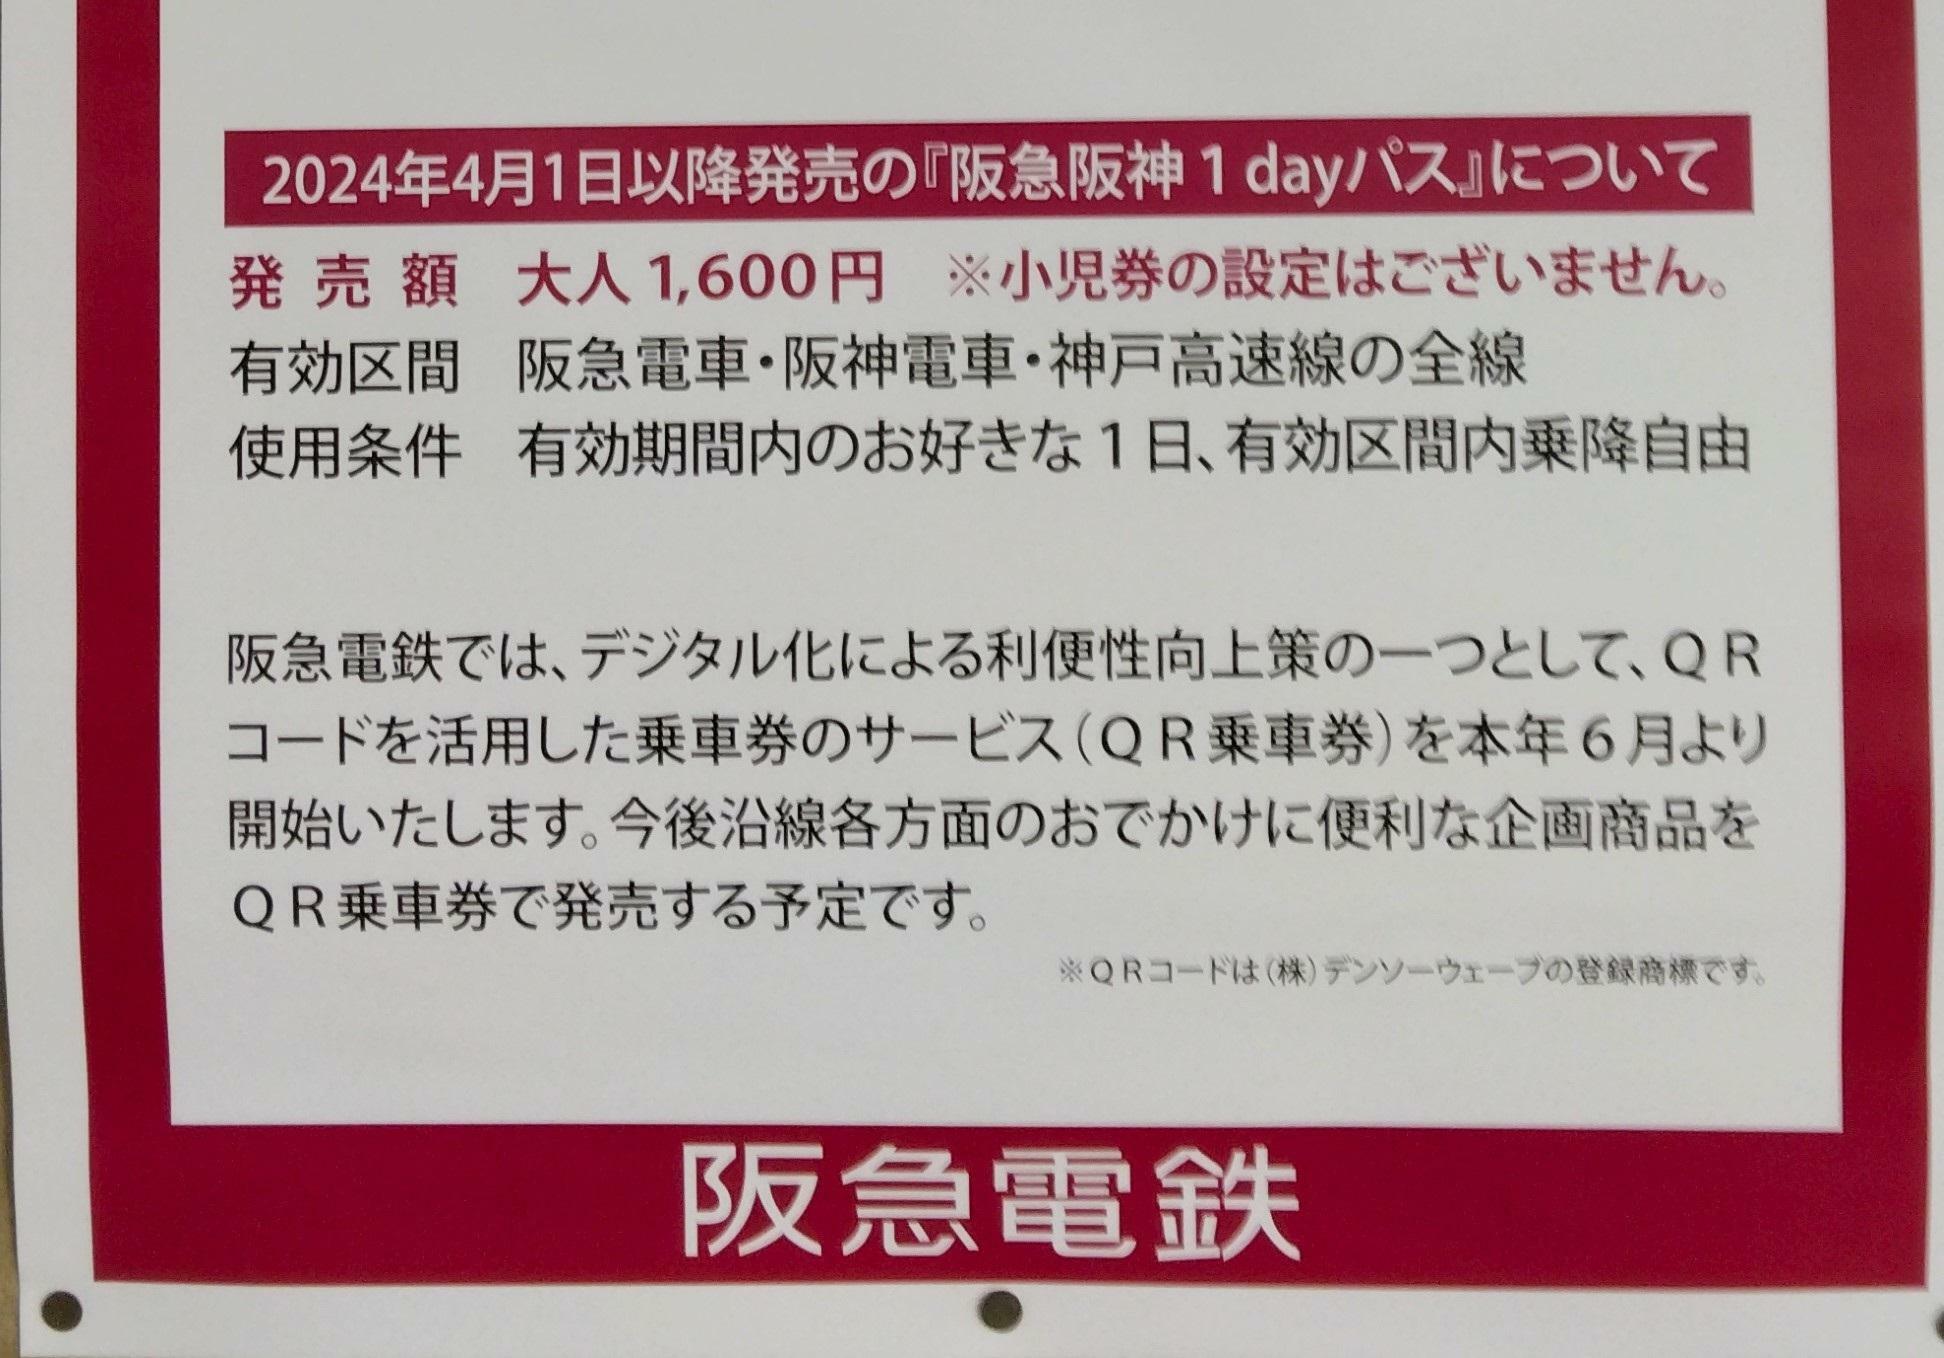 阪急電鉄、阪神電車各駅に貼られている「阪急阪神１dayパス」値上げのポスター。